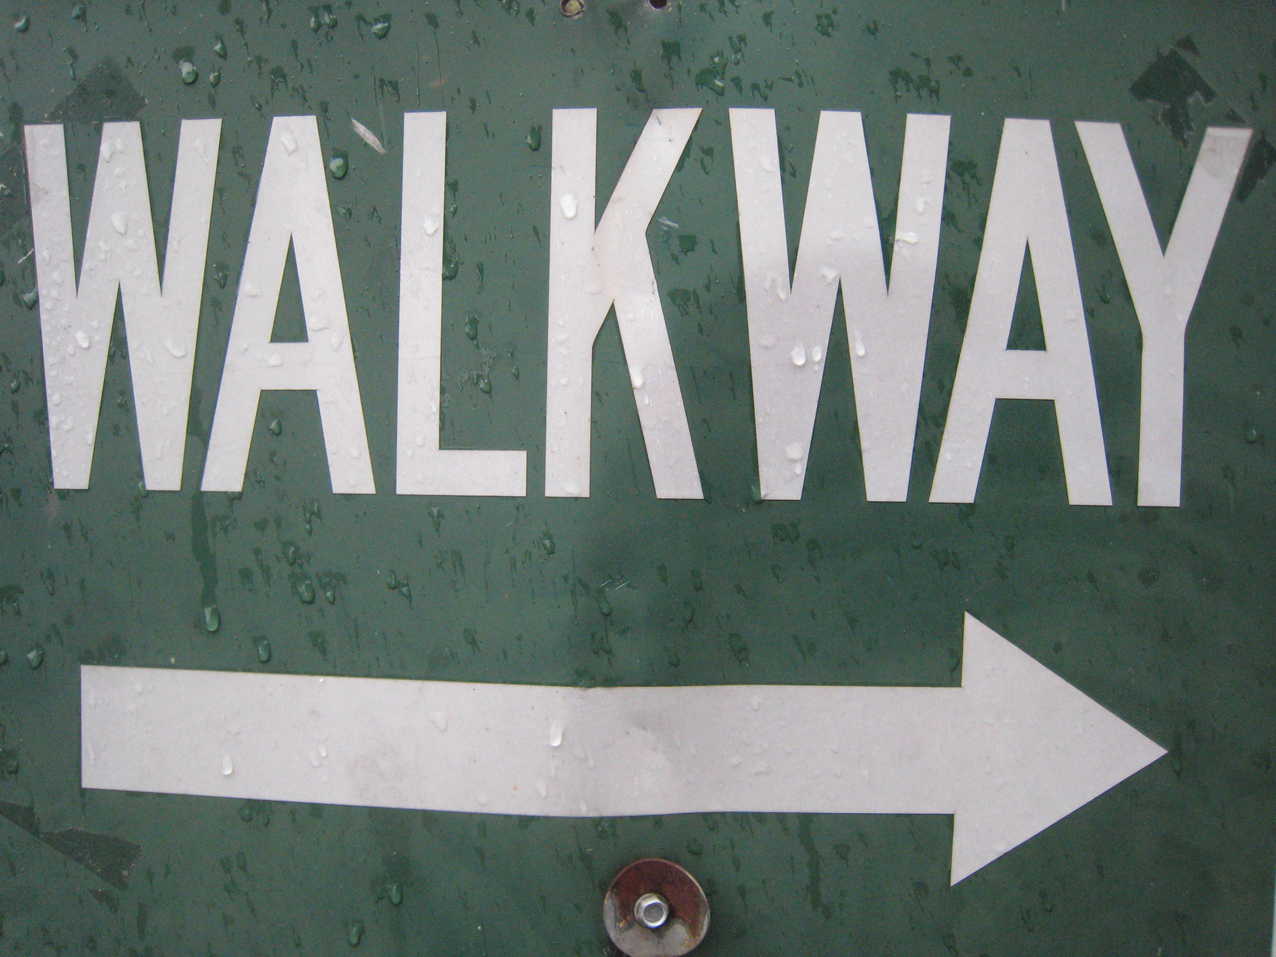 Way walk